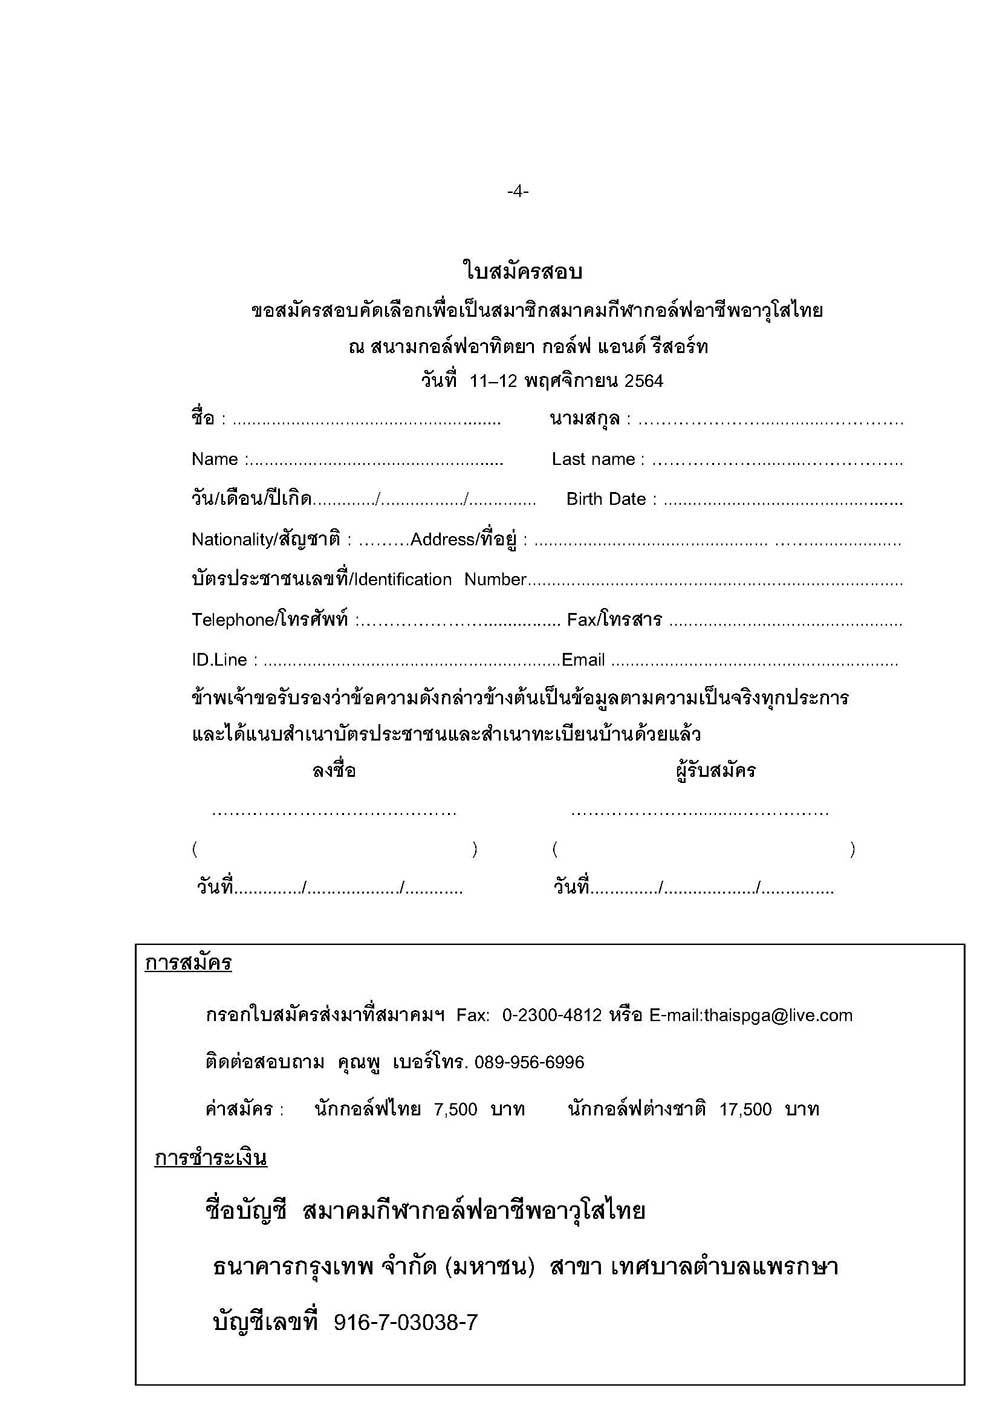 หนงสอสอบภาษาไทย อาทตยา 11 12 พ.ย 04